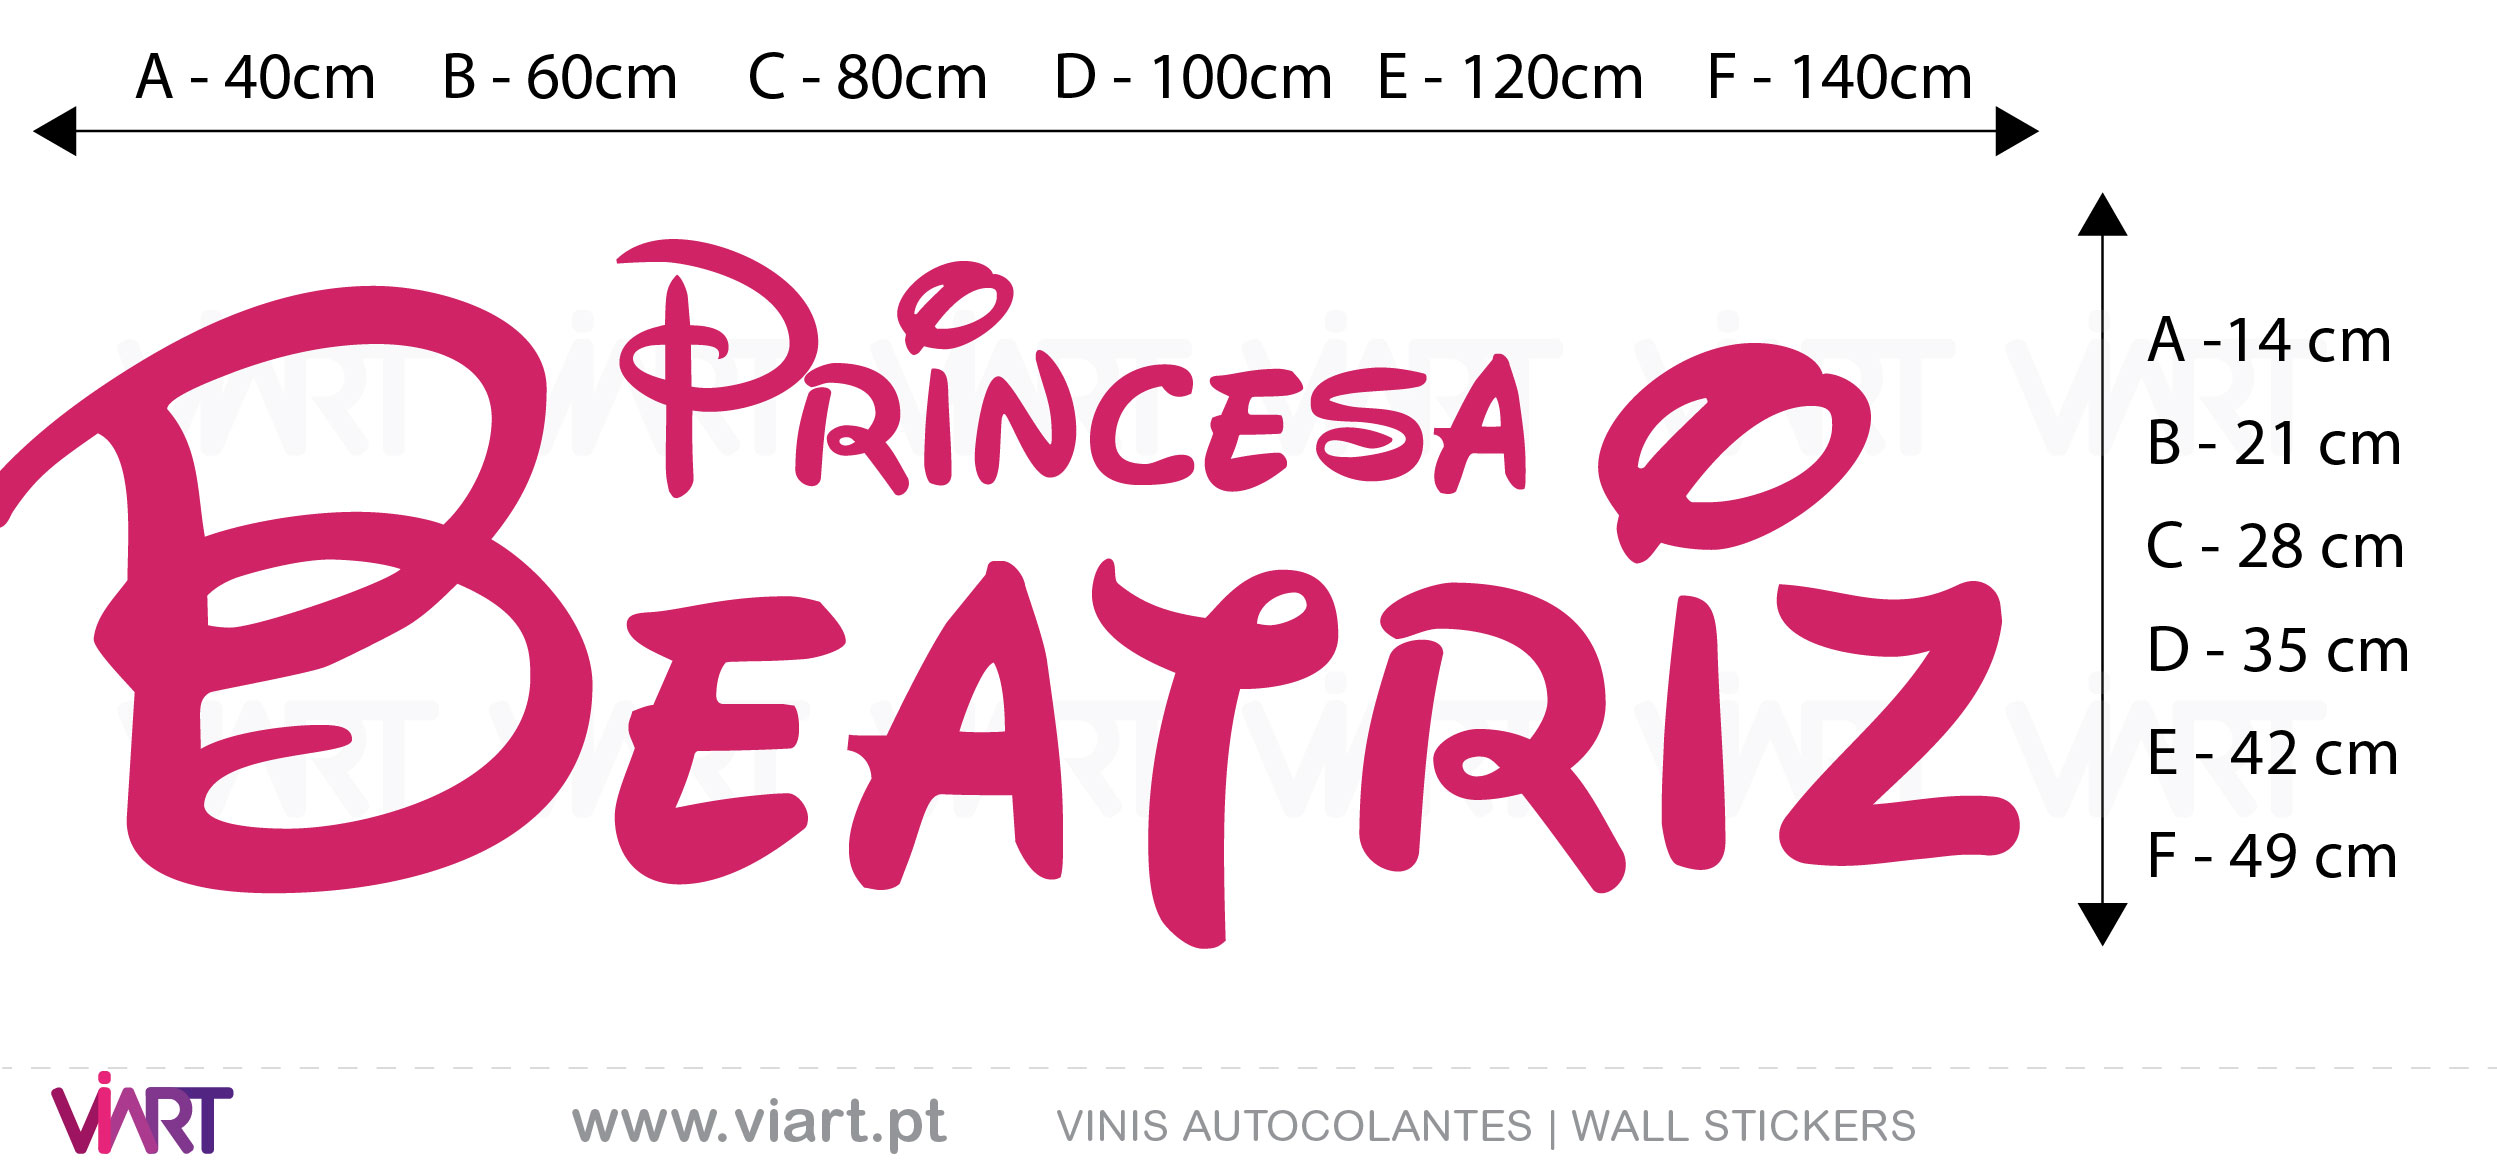 Viart - Vinis autocolantes decorativos - Nome da Princesa <3 Personalizável - medidas